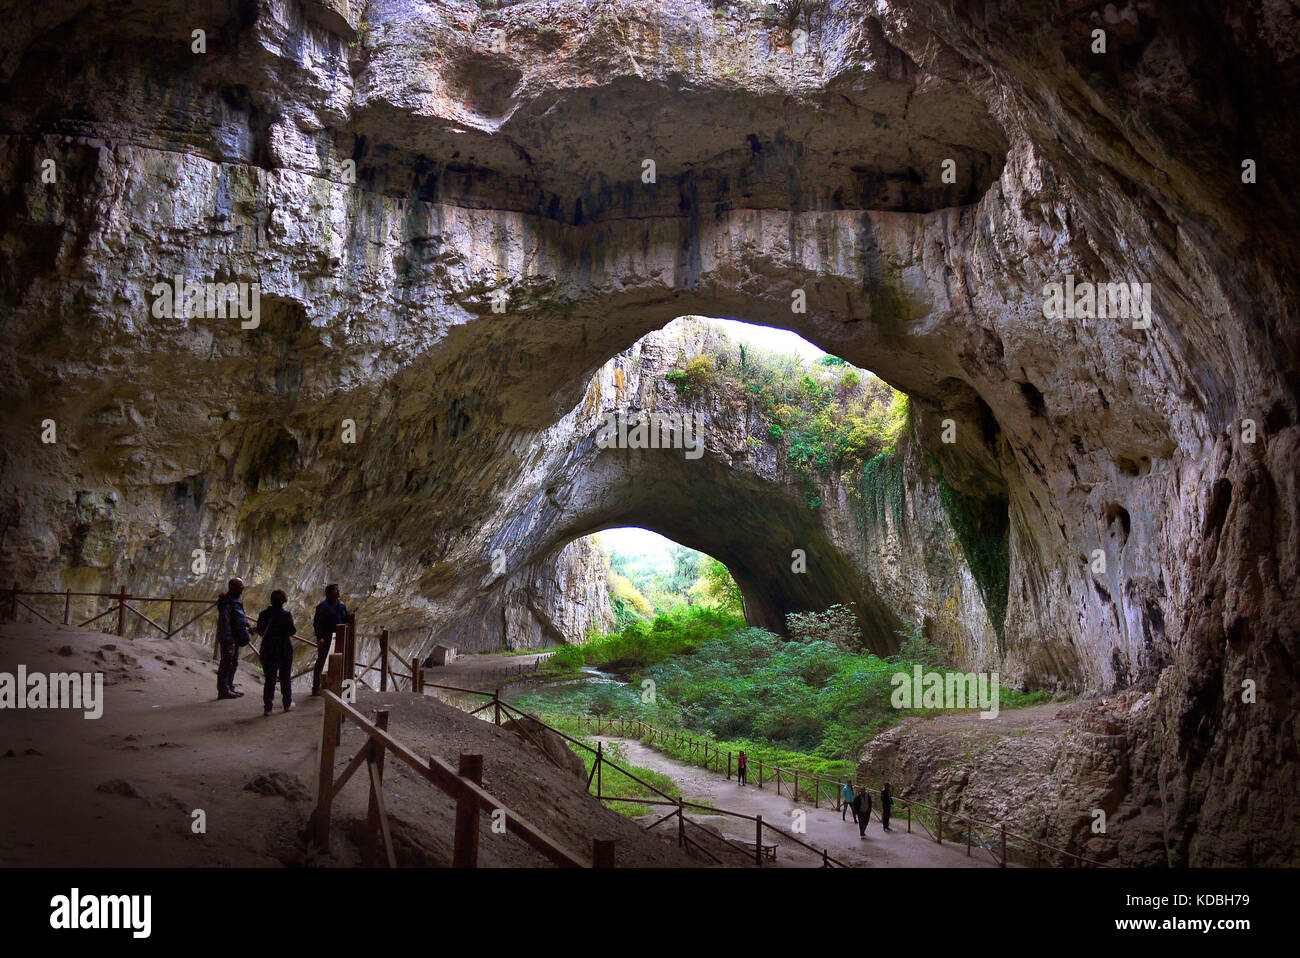 Los visitantes se ven contrarrestadas por el tamaño de la cueva Devetashka en Bulgaria. Foto de stock